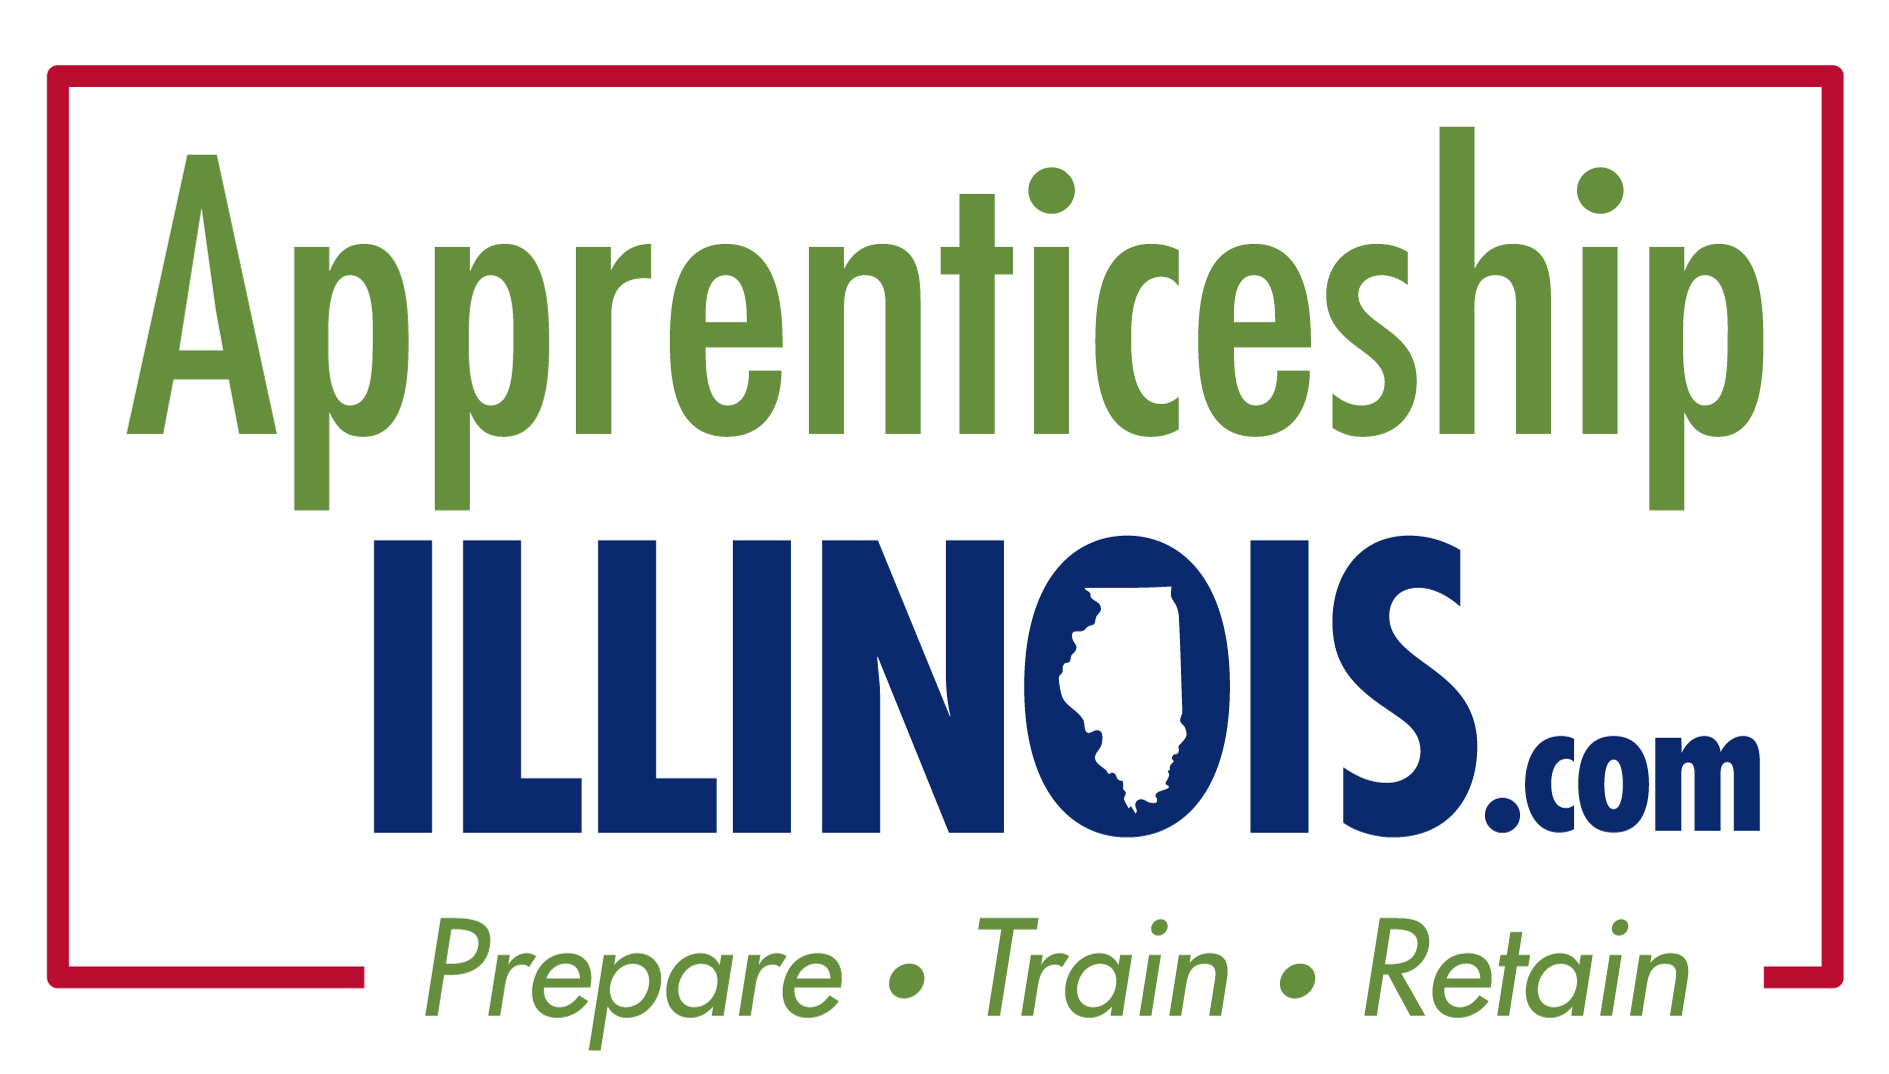 Apprenticeship Illinois.com